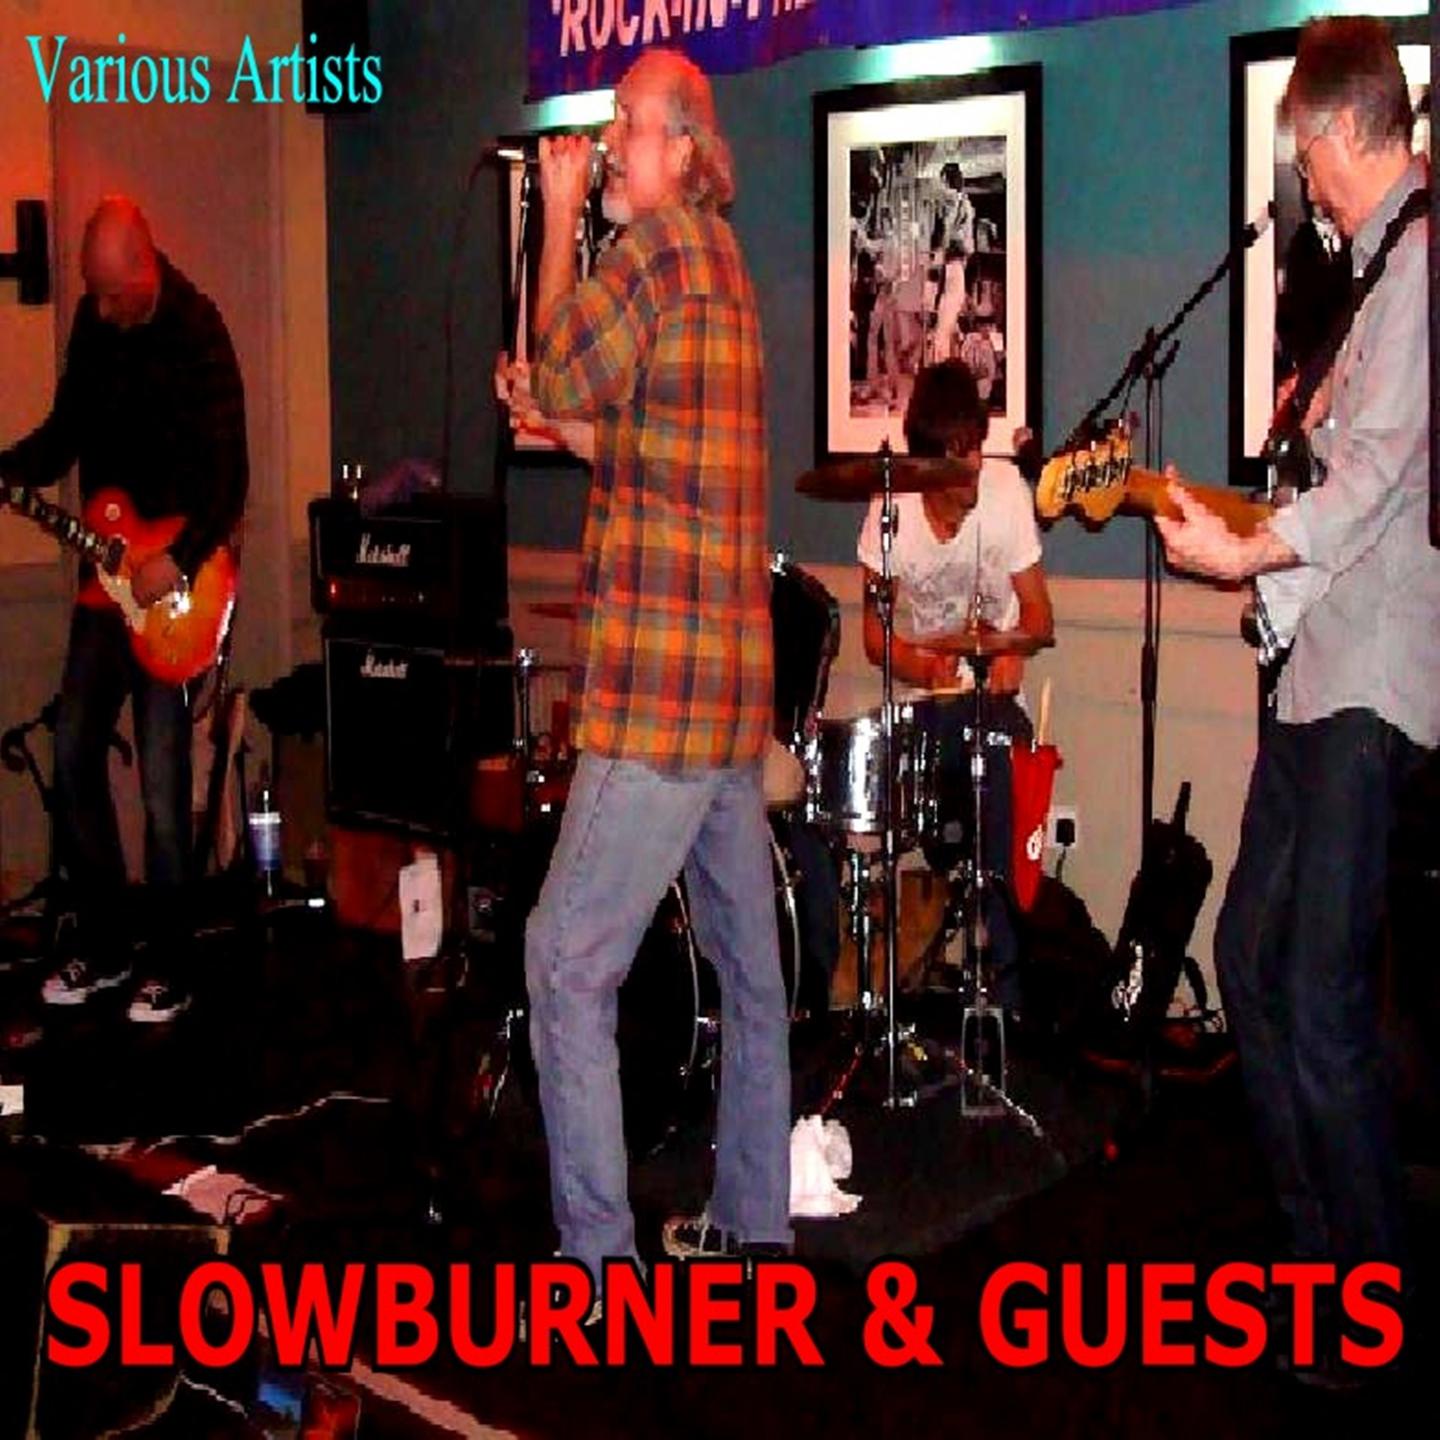 Slowburner & Guests